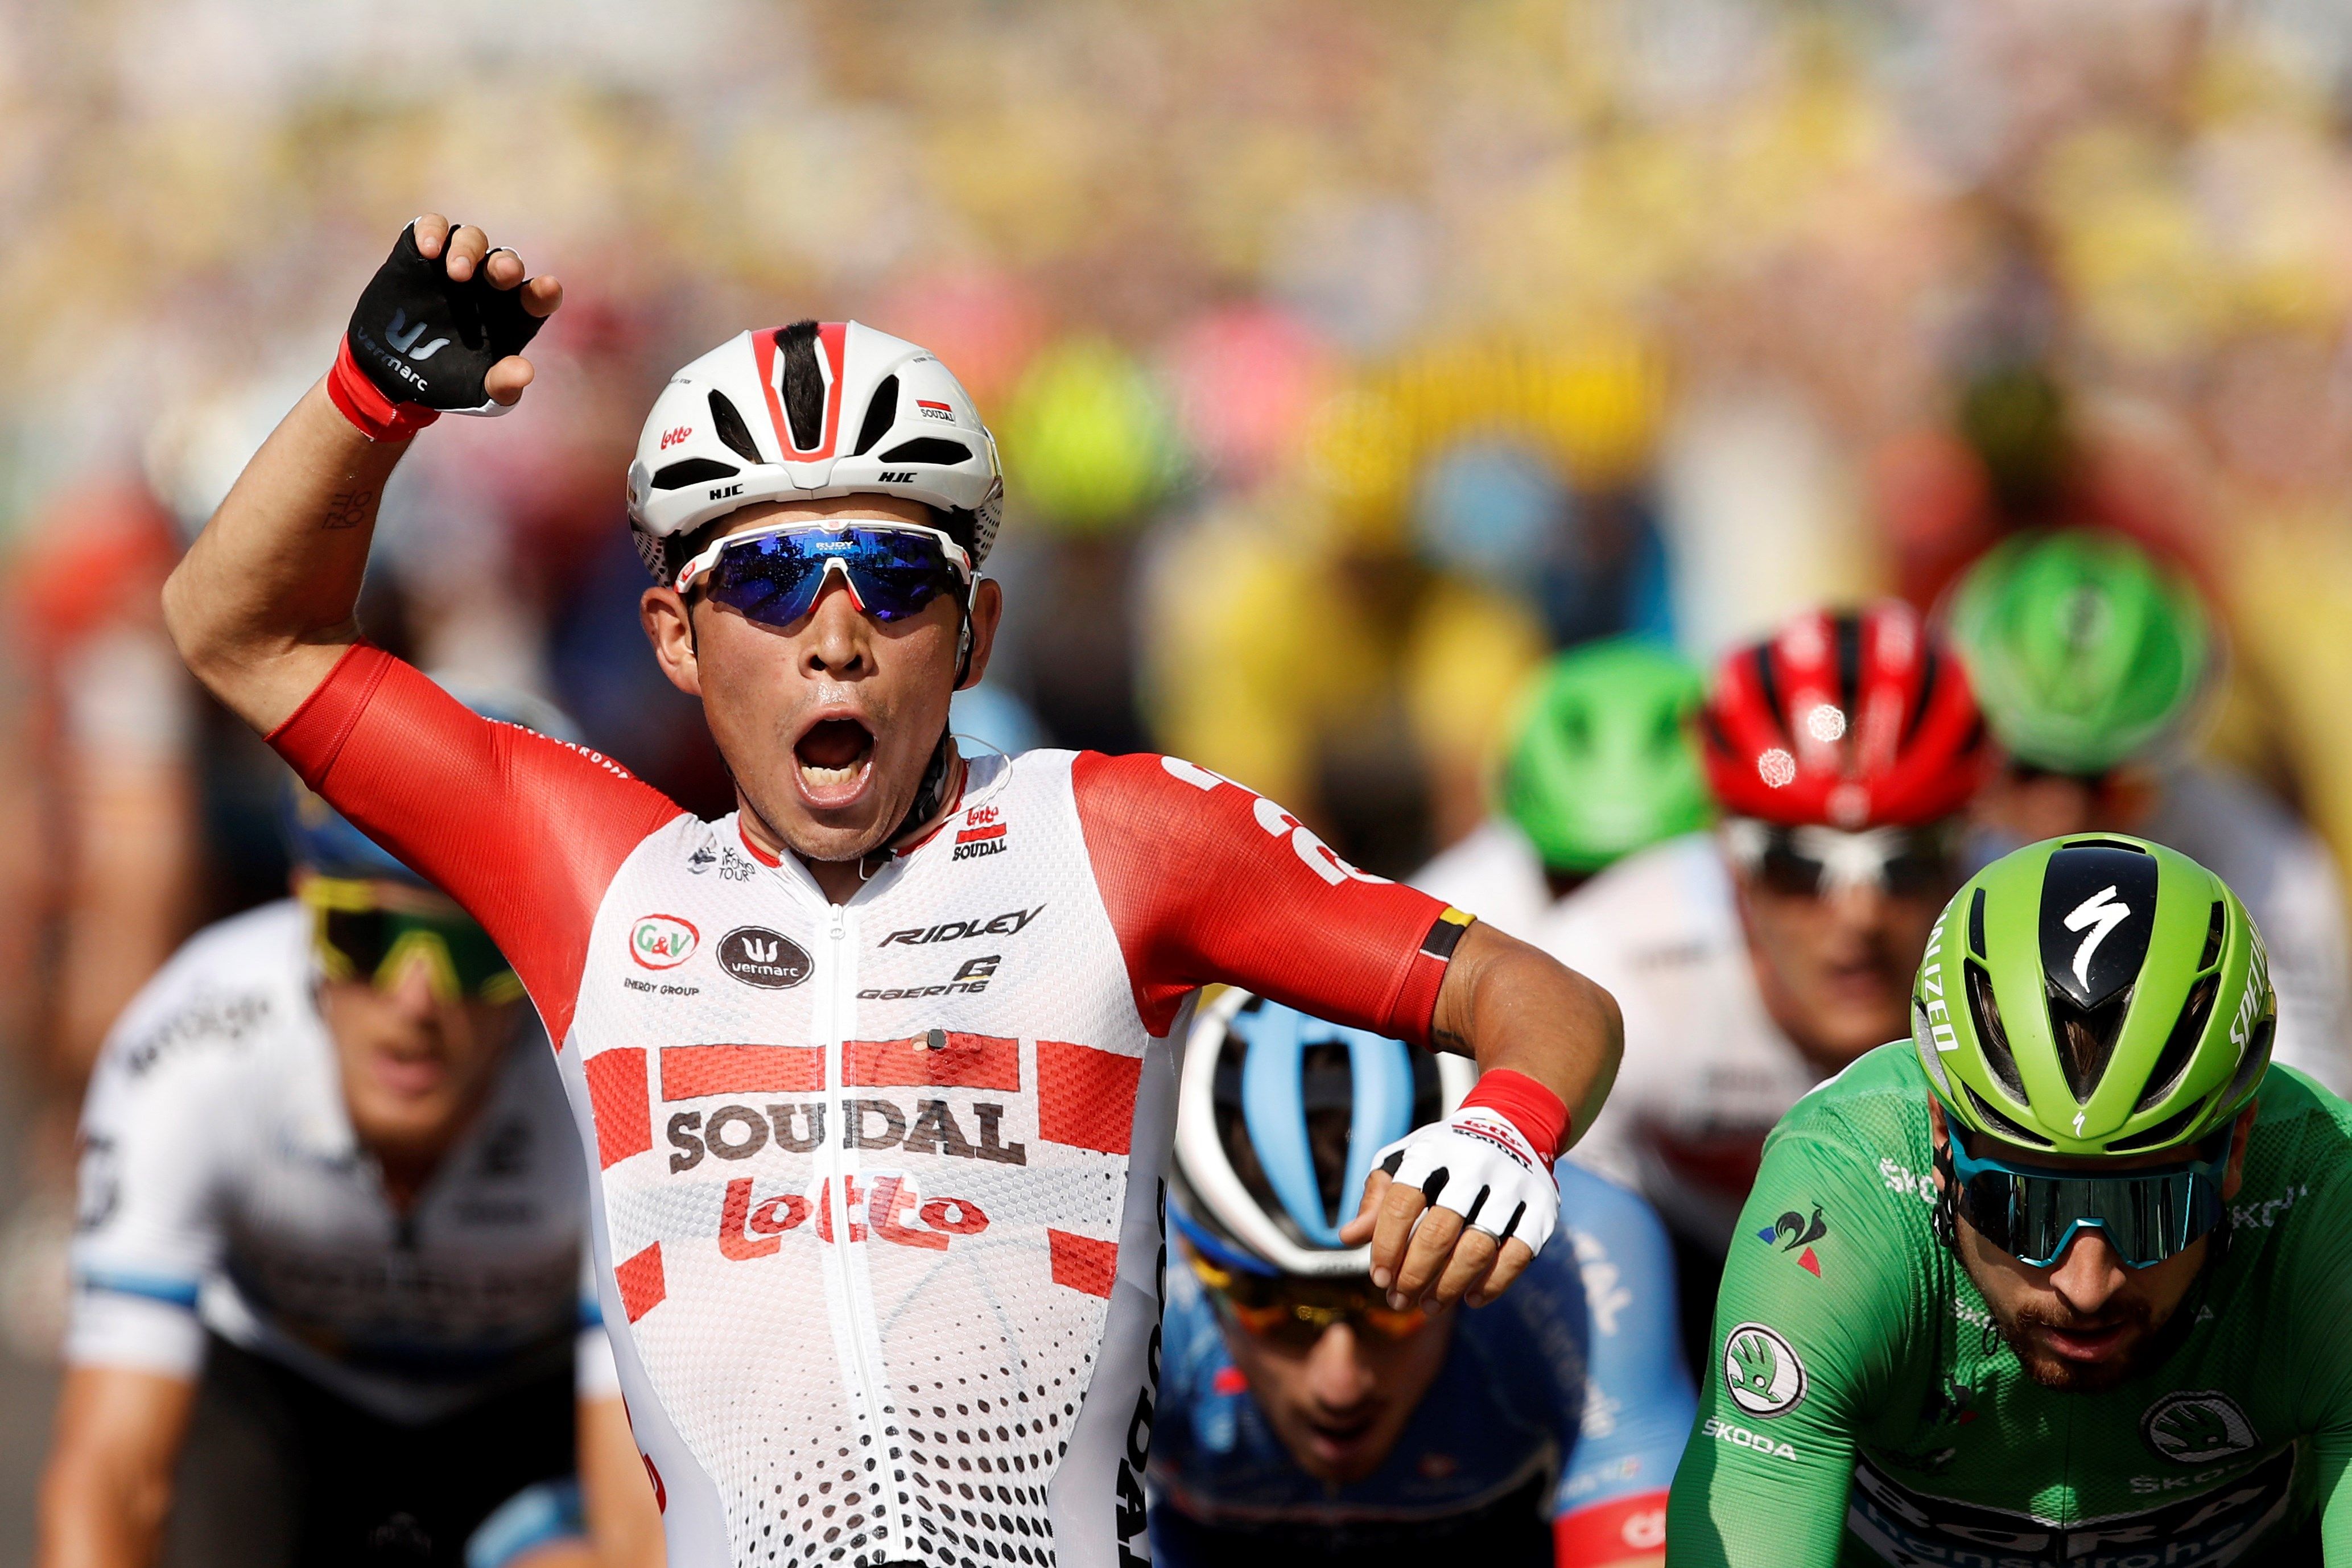 Ewan suma la segona victòria al Tour de França i Alaphilippe no es mou del liderat